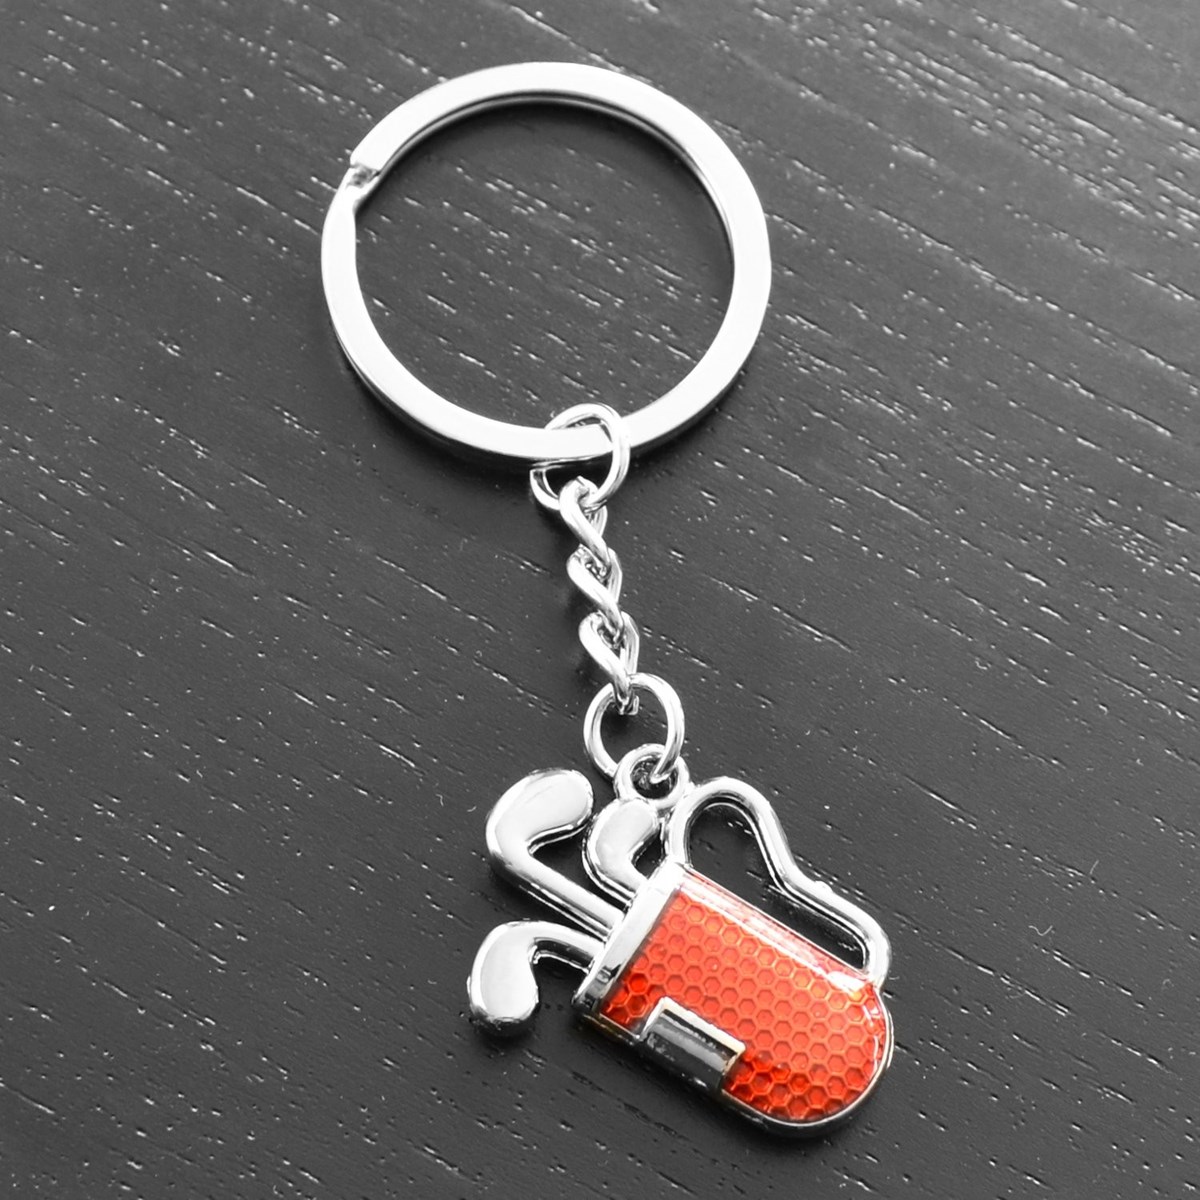 Porte-clés sac de golf 3 clubs caddie rouge - vue 4